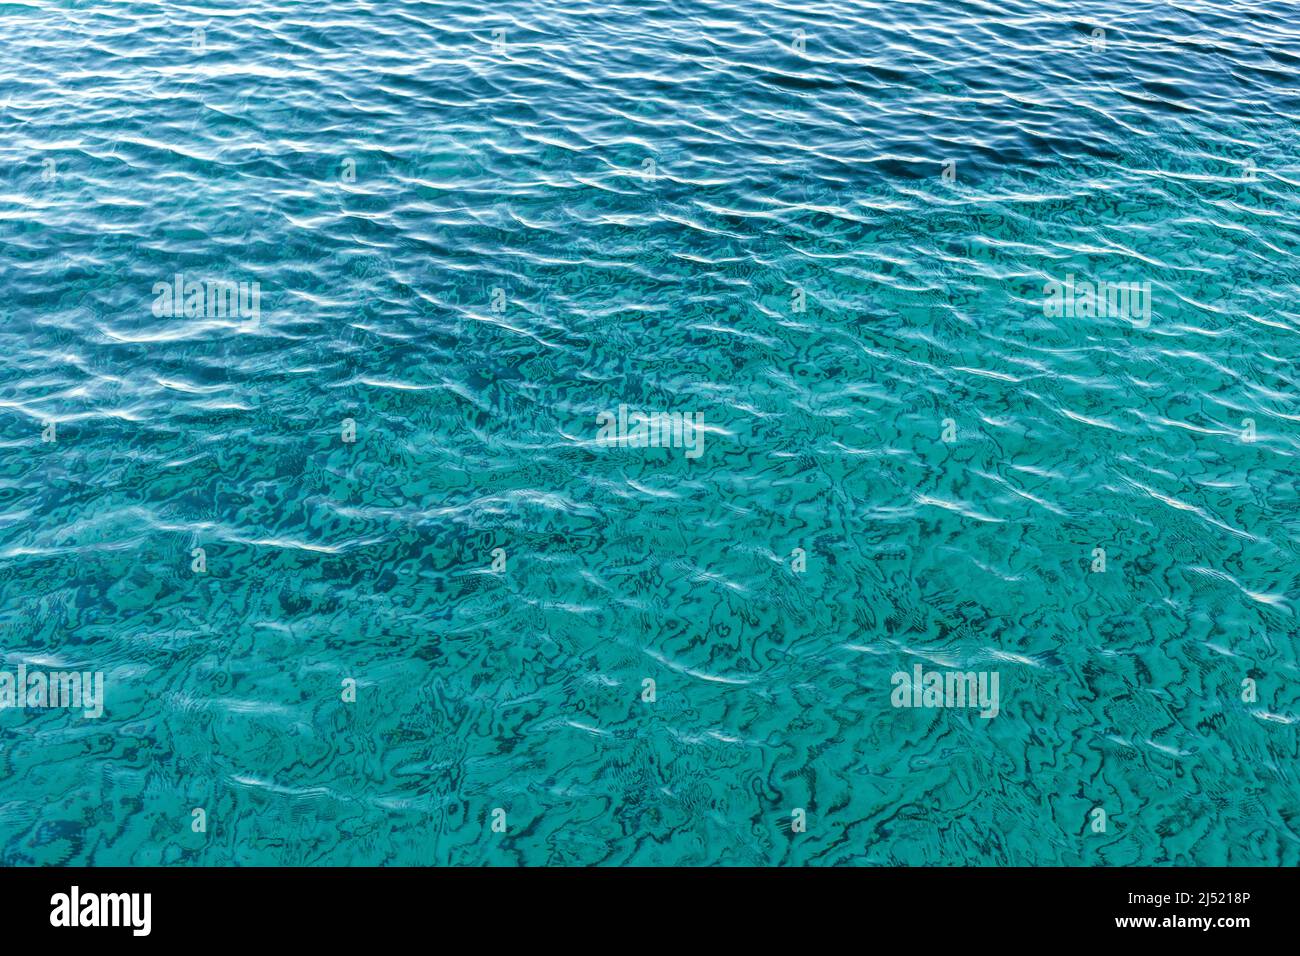 Sfondo astratto della superficie del mare, colori blu, verde e turchese Foto Stock